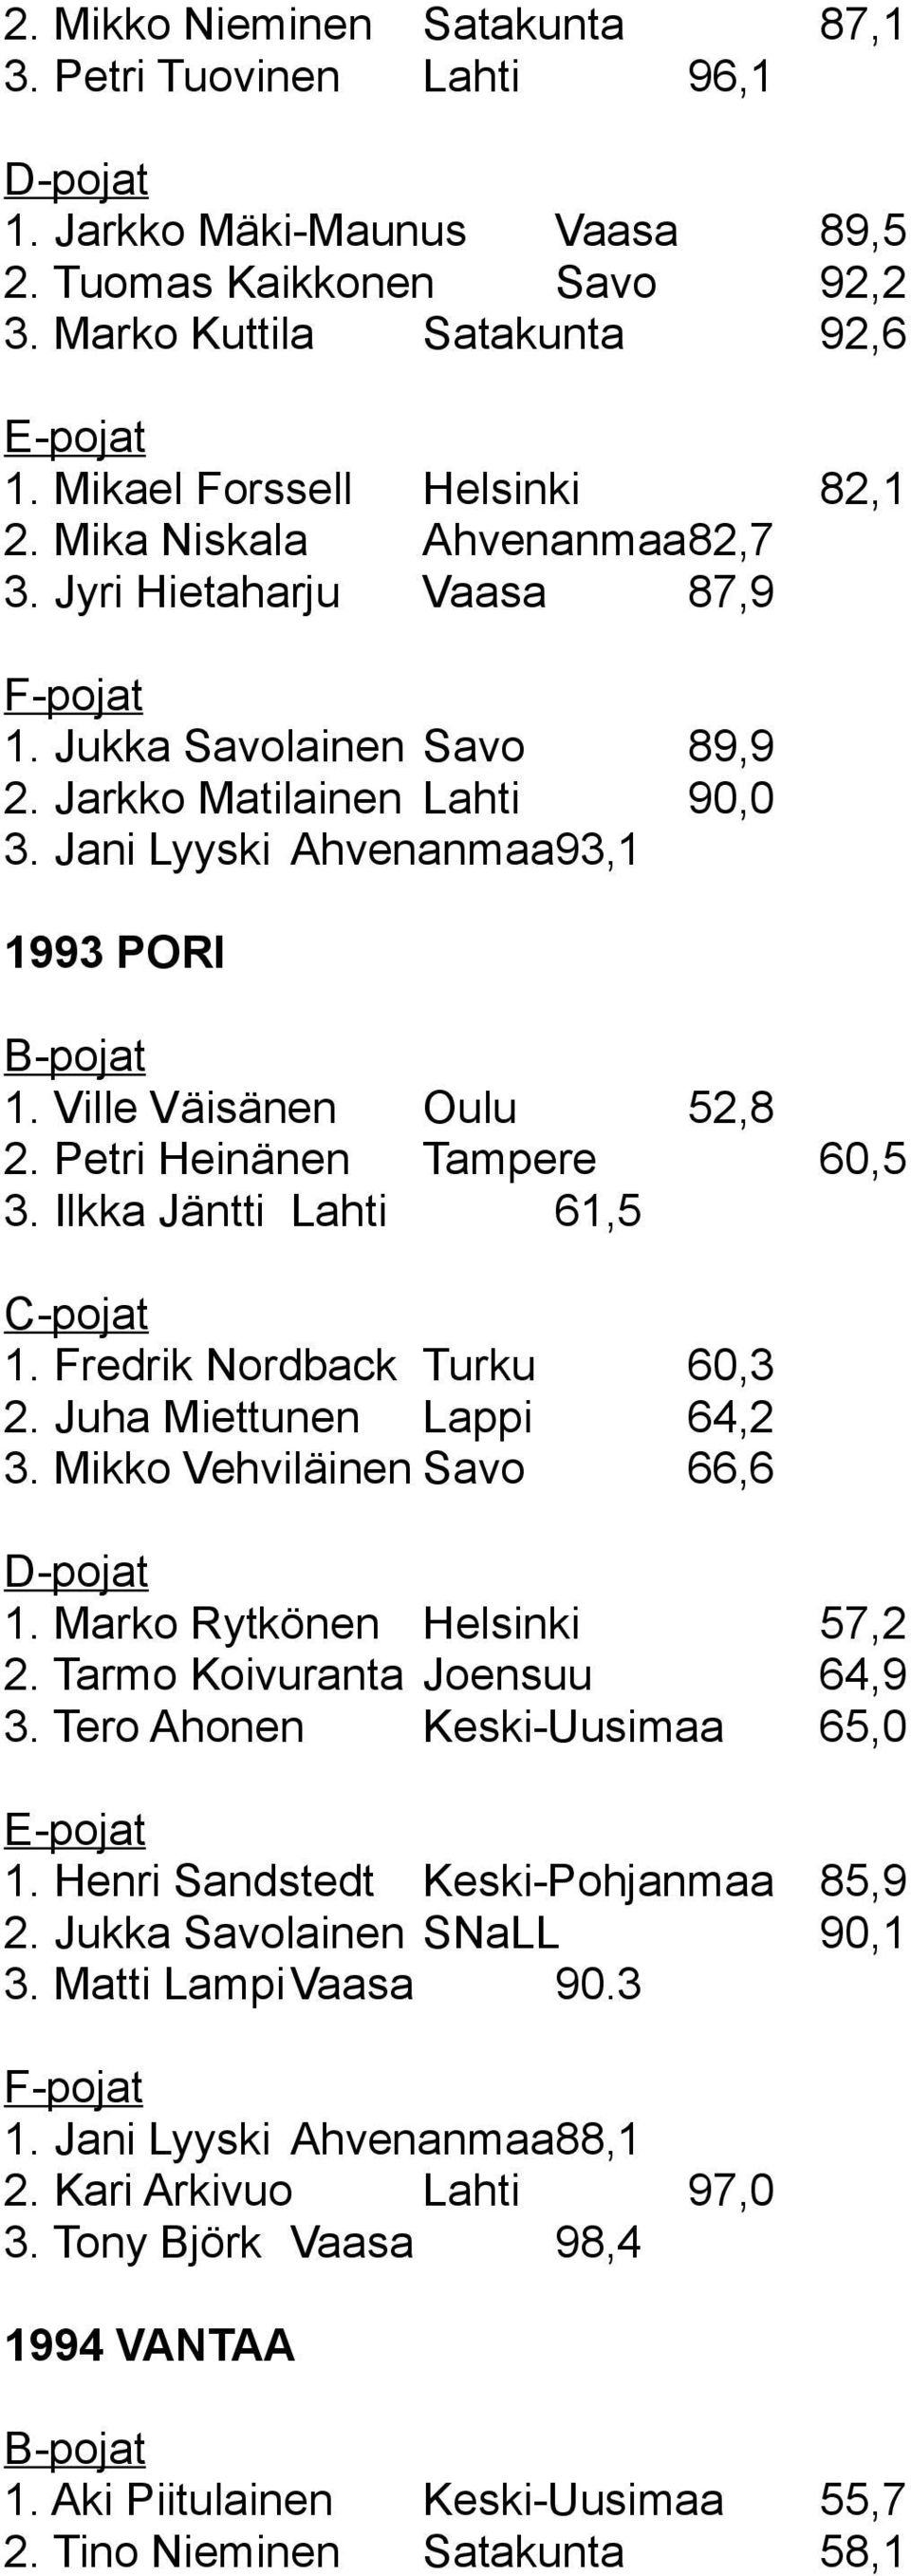 Jani Lyyski Ahvenanmaa93,1 1993 PORI B-pojat 1. Ville Väisänen Oulu 52,8 2. Petri Heinänen Tampere 60,5 3. Ilkka Jäntti Lahti 61,5 C-pojat 1. Fredrik Nordback Turku 60,3 2.